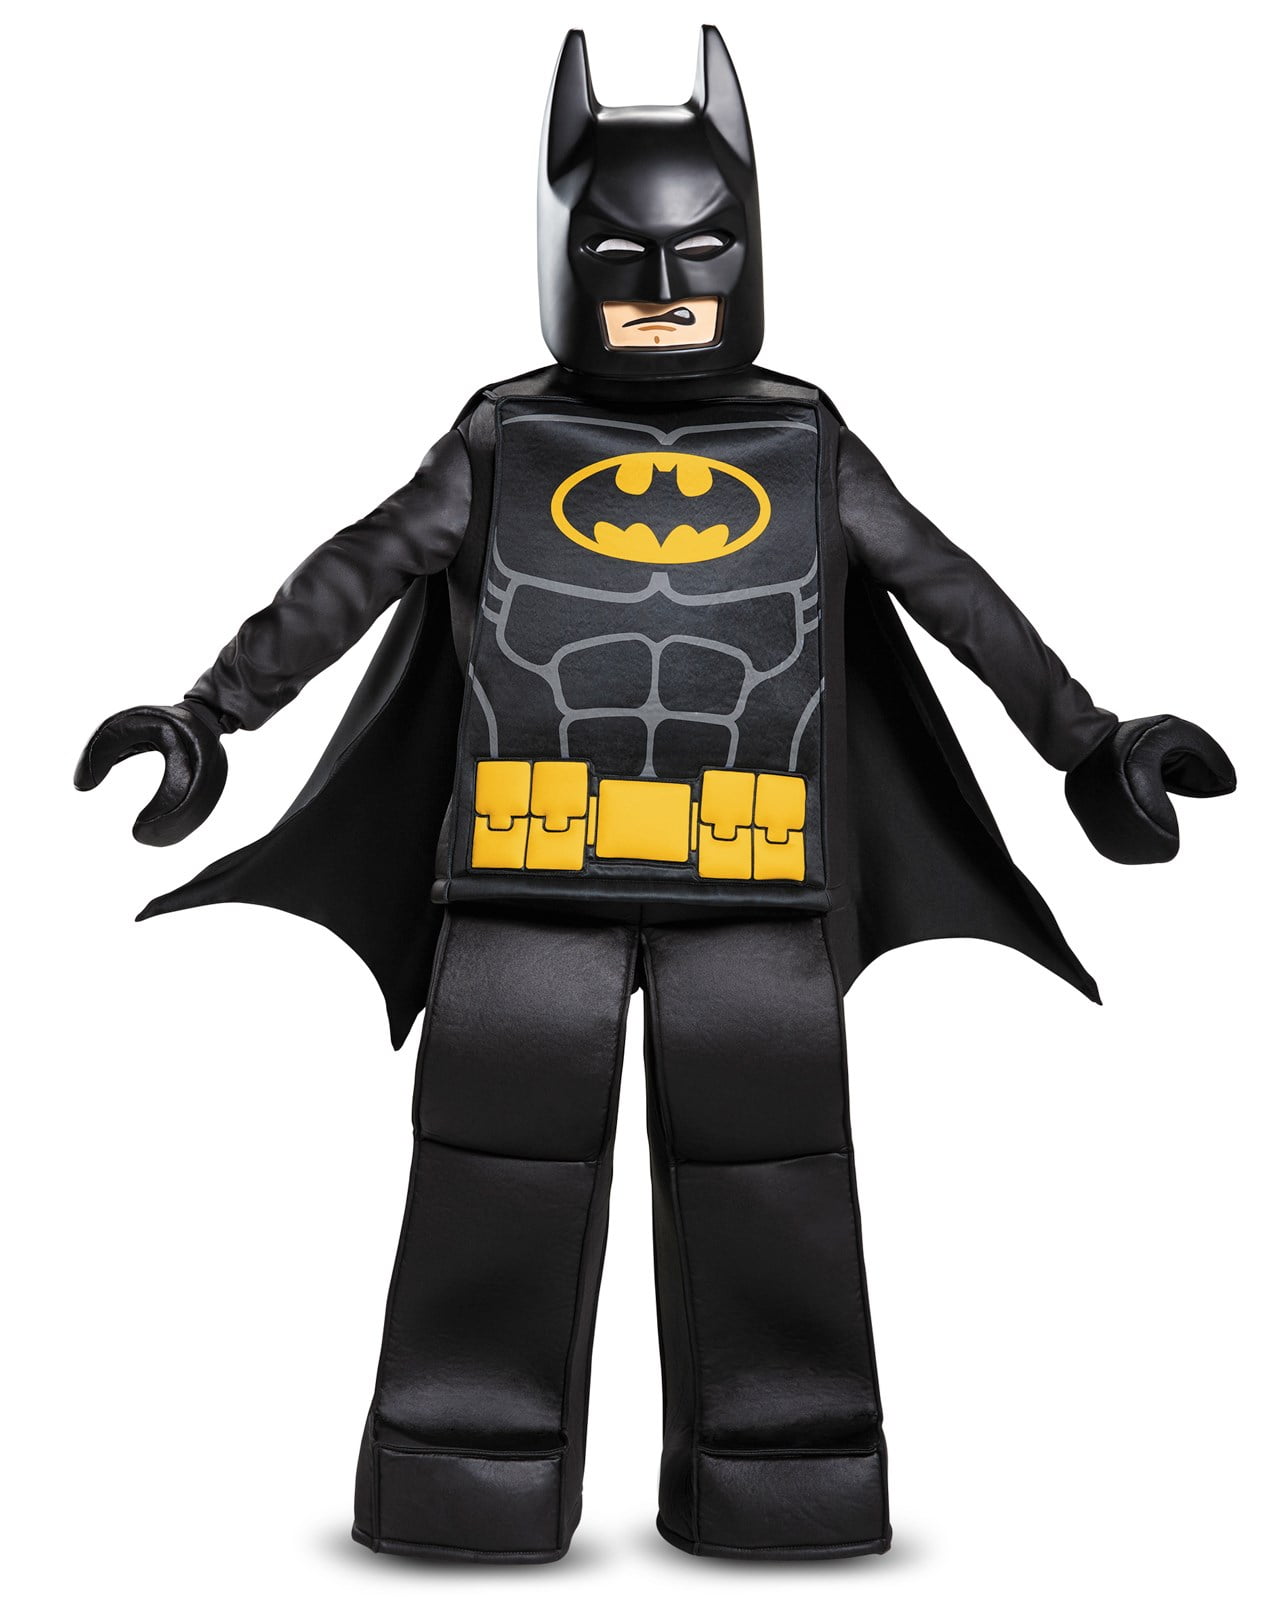 Lego Batman Costume Boys Large Tunic/Top NWOT Dress Up DC Comics 10-12 Black Q1 